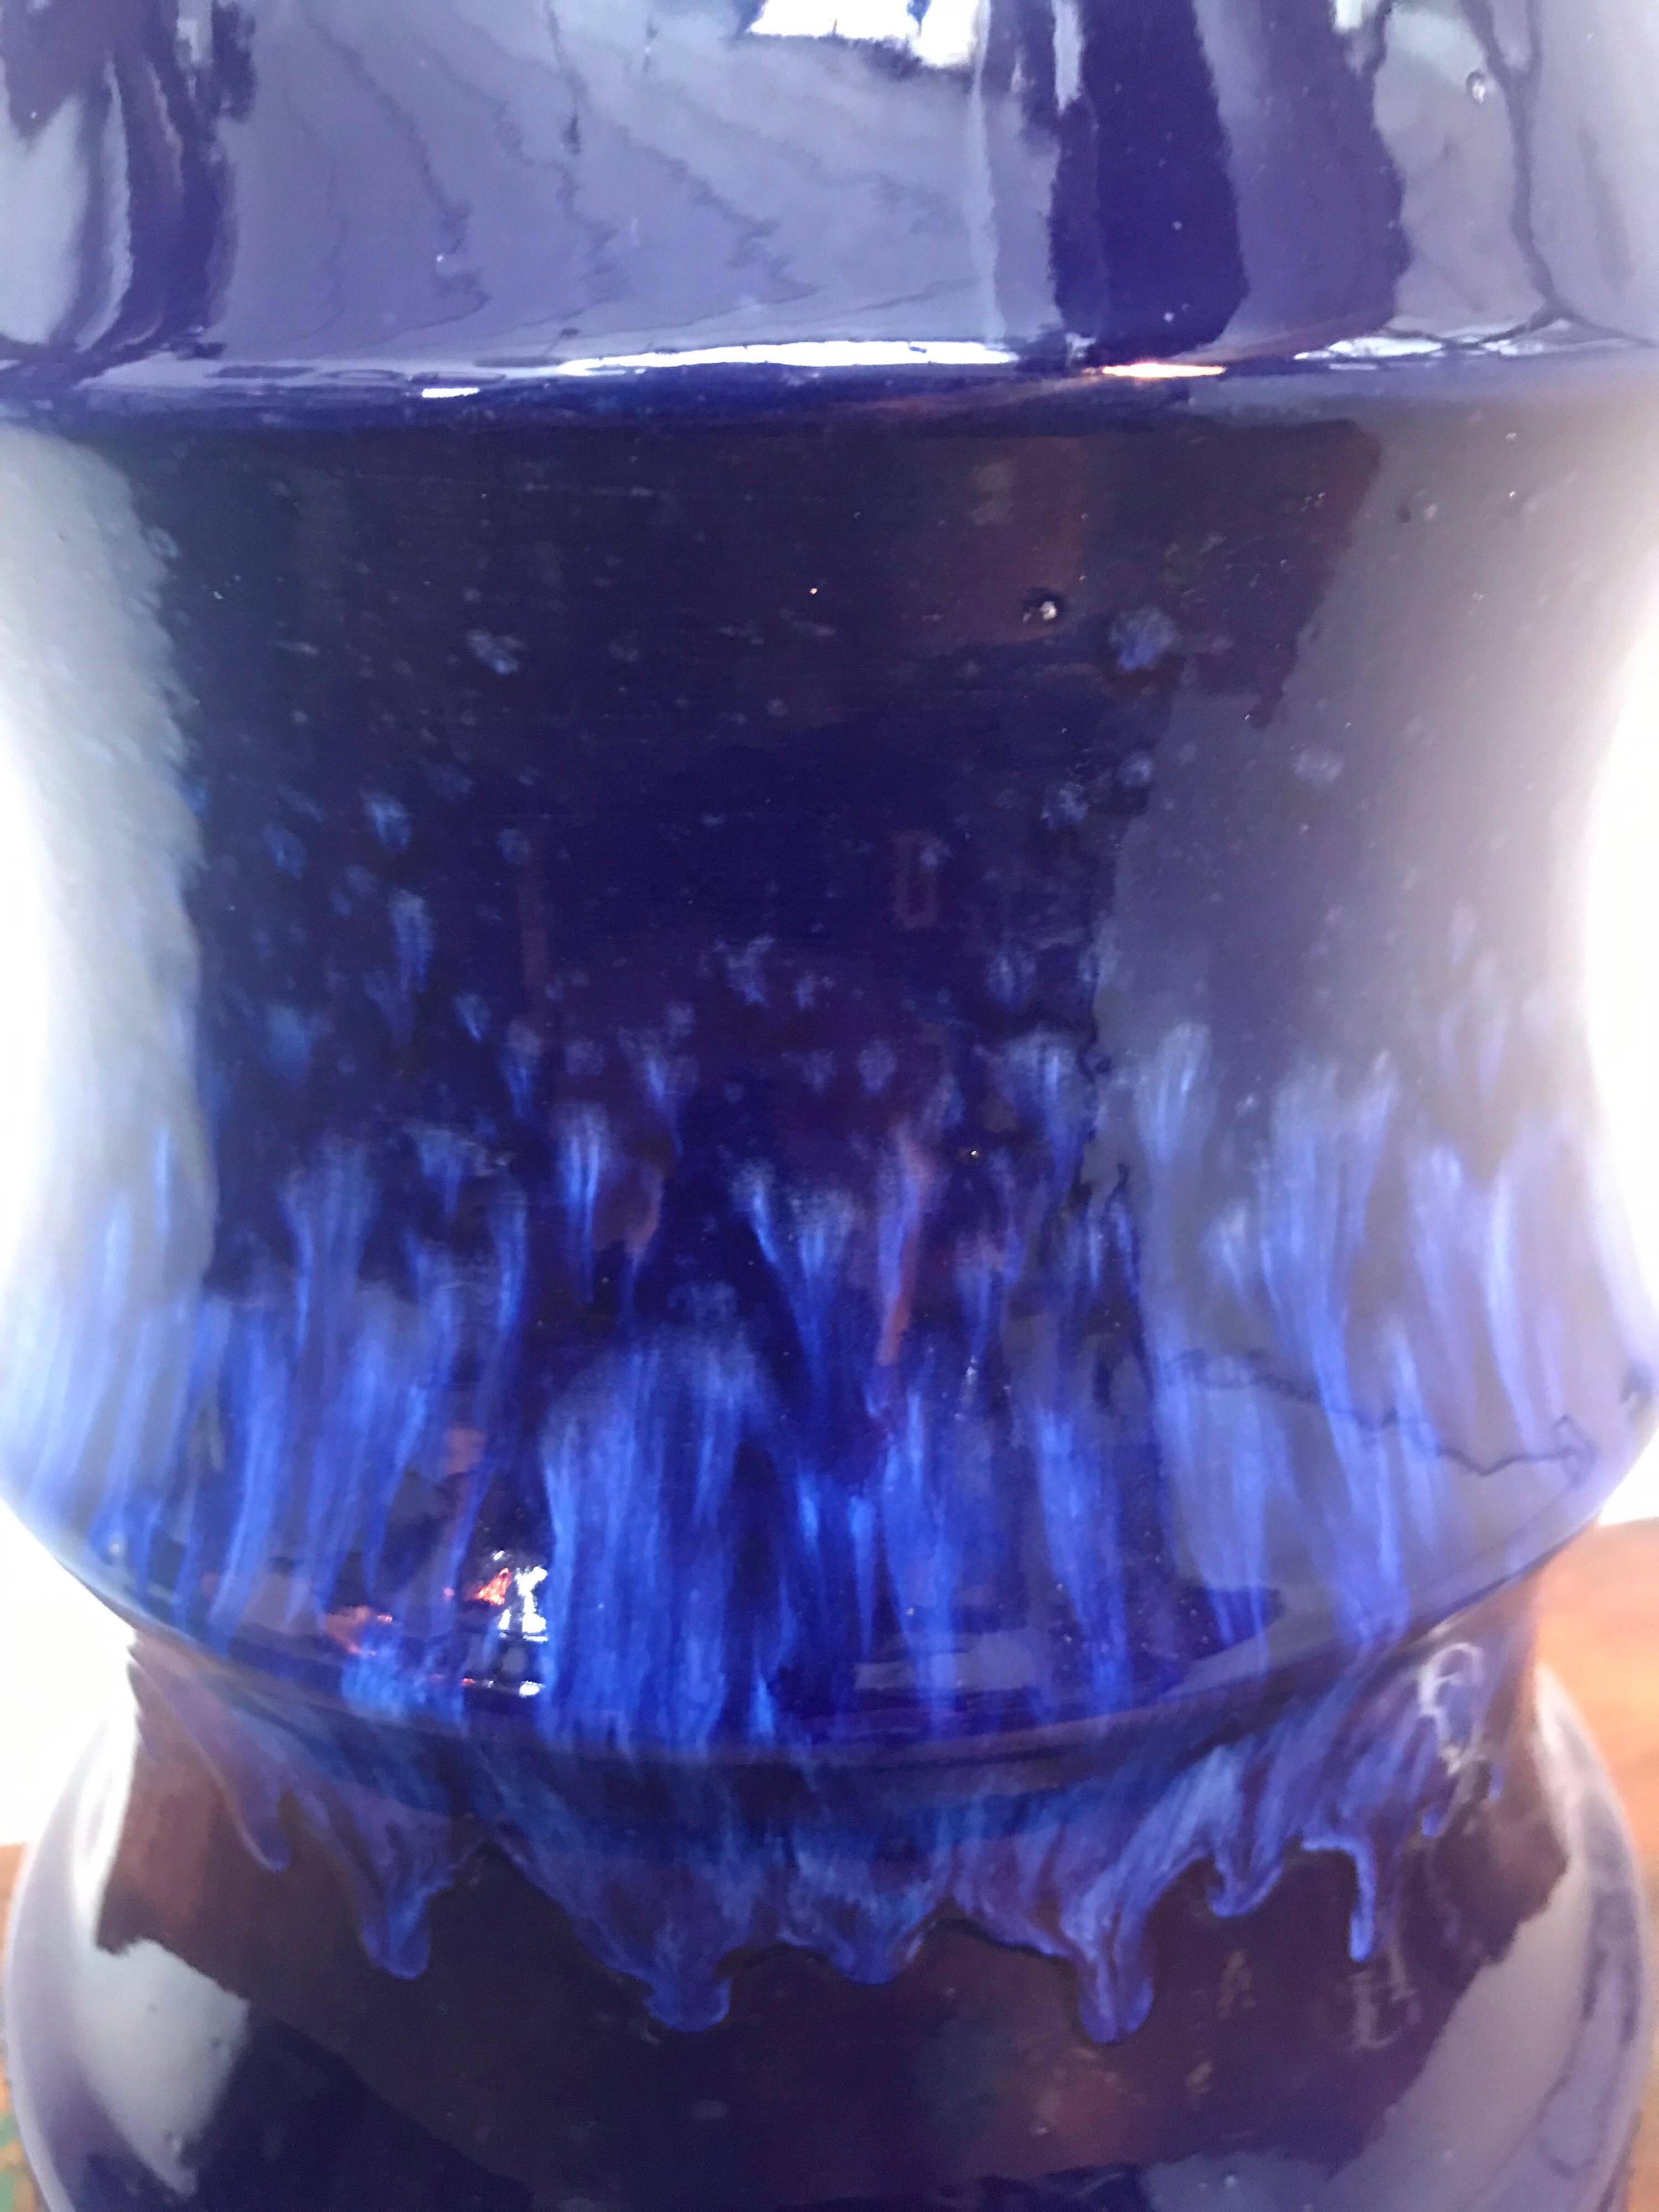 Vase d'art ouest-allemand vintage dans un fantastique bleu glacé accrocheur. 
Pas de fissures ni d'éclats 
Prêt à être expédié partout dans le monde.